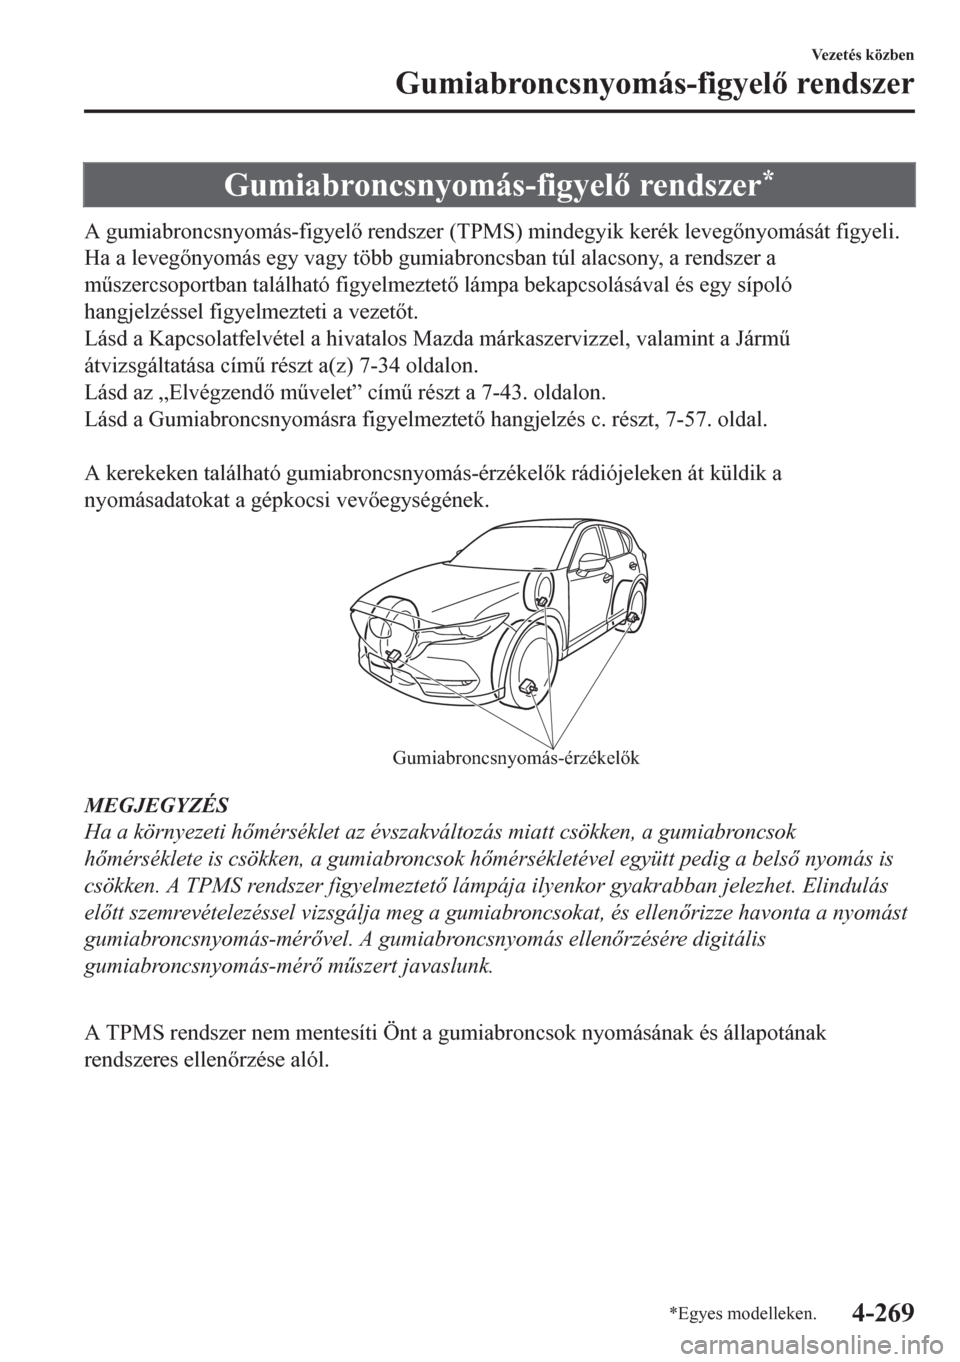 MAZDA MODEL CX-5 2018  Kezelési útmutató (in Hungarian) Gumiabroncsnyomás-figyel rendszer*
A gumiabroncsnyomás-figyel rendszer (TPMS) mindegyik kerék levegnyomását figyeli.
Ha a levegnyomás egy vagy több gumiabroncsban túl alacsony, a rends